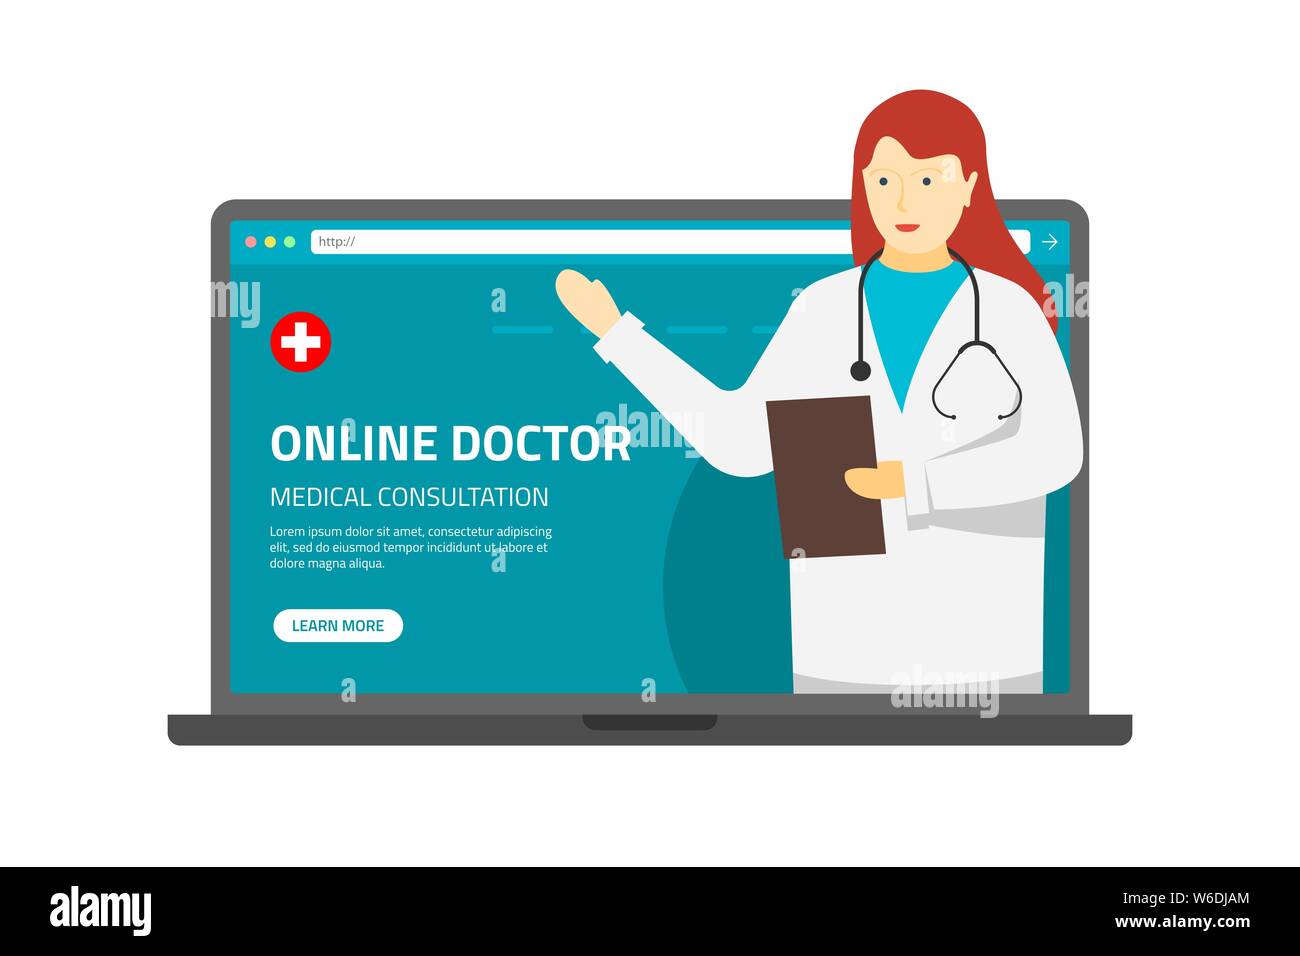 Health Care Online-Beratung konzeptionelle Banner. Medizinische Internet-Hilfe. Weibliche Ärztin gibt medizinische Informationen. Der Patient verwendet einen Laptop für die Online-Diagnose. Vektor-eps-Abbildung Stock Vektor